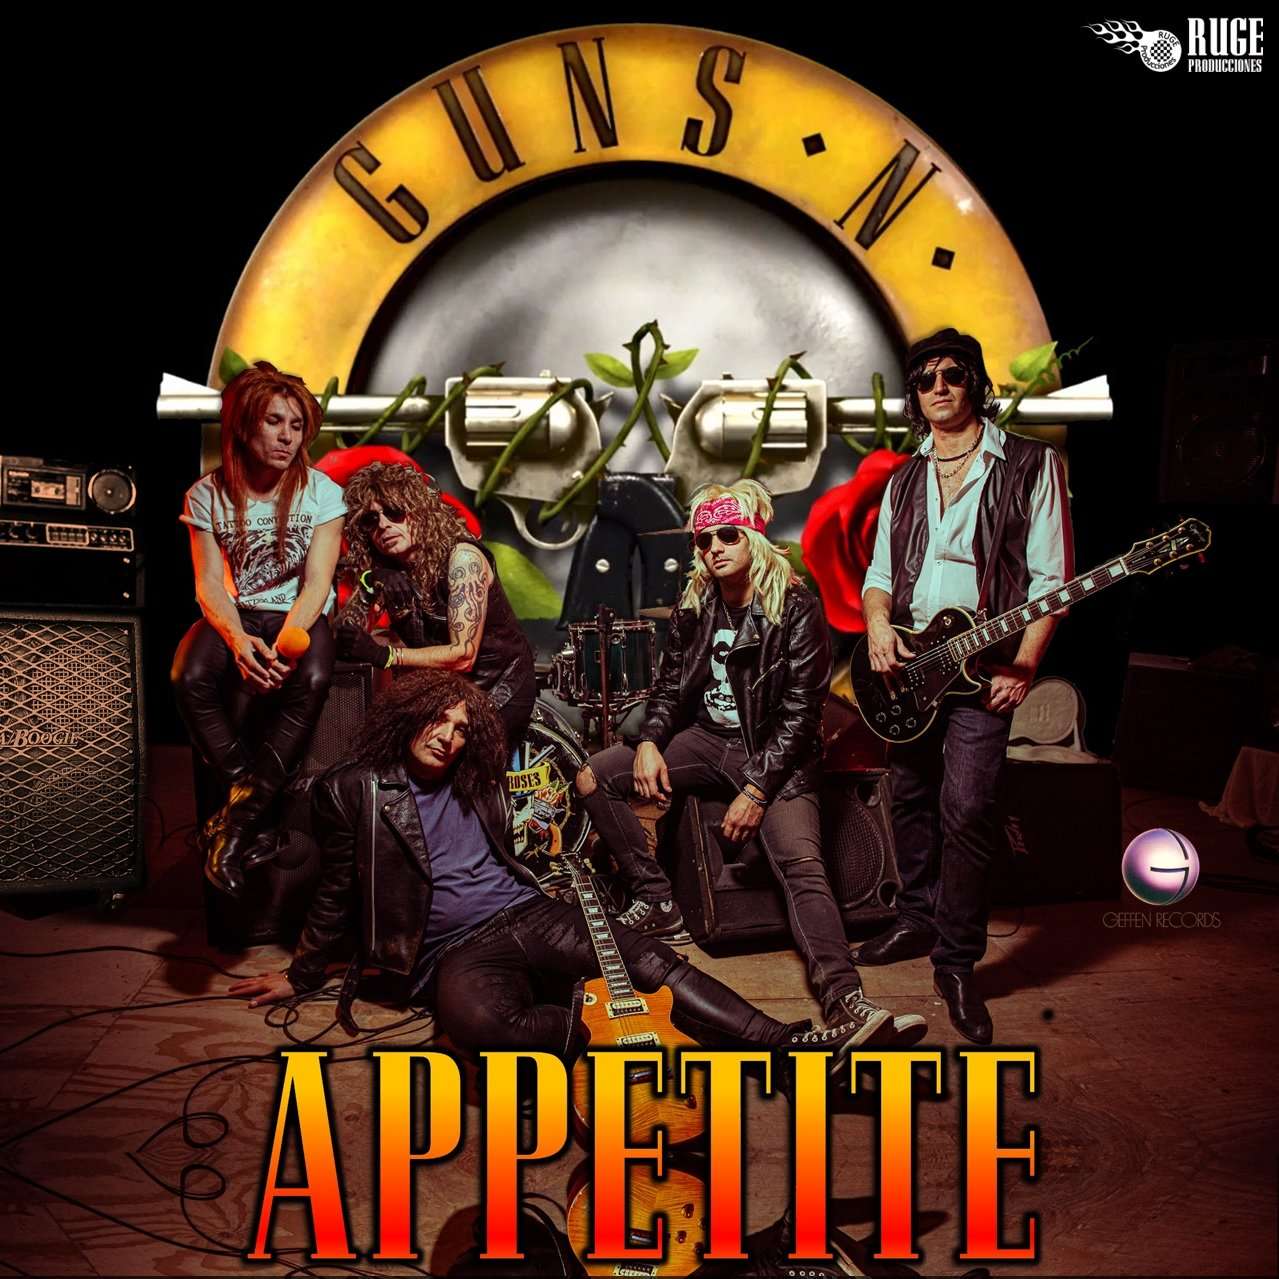 Llega a Tandil "Appetite", el show tributo a Guns N' Roses más grande de Latinoamérica